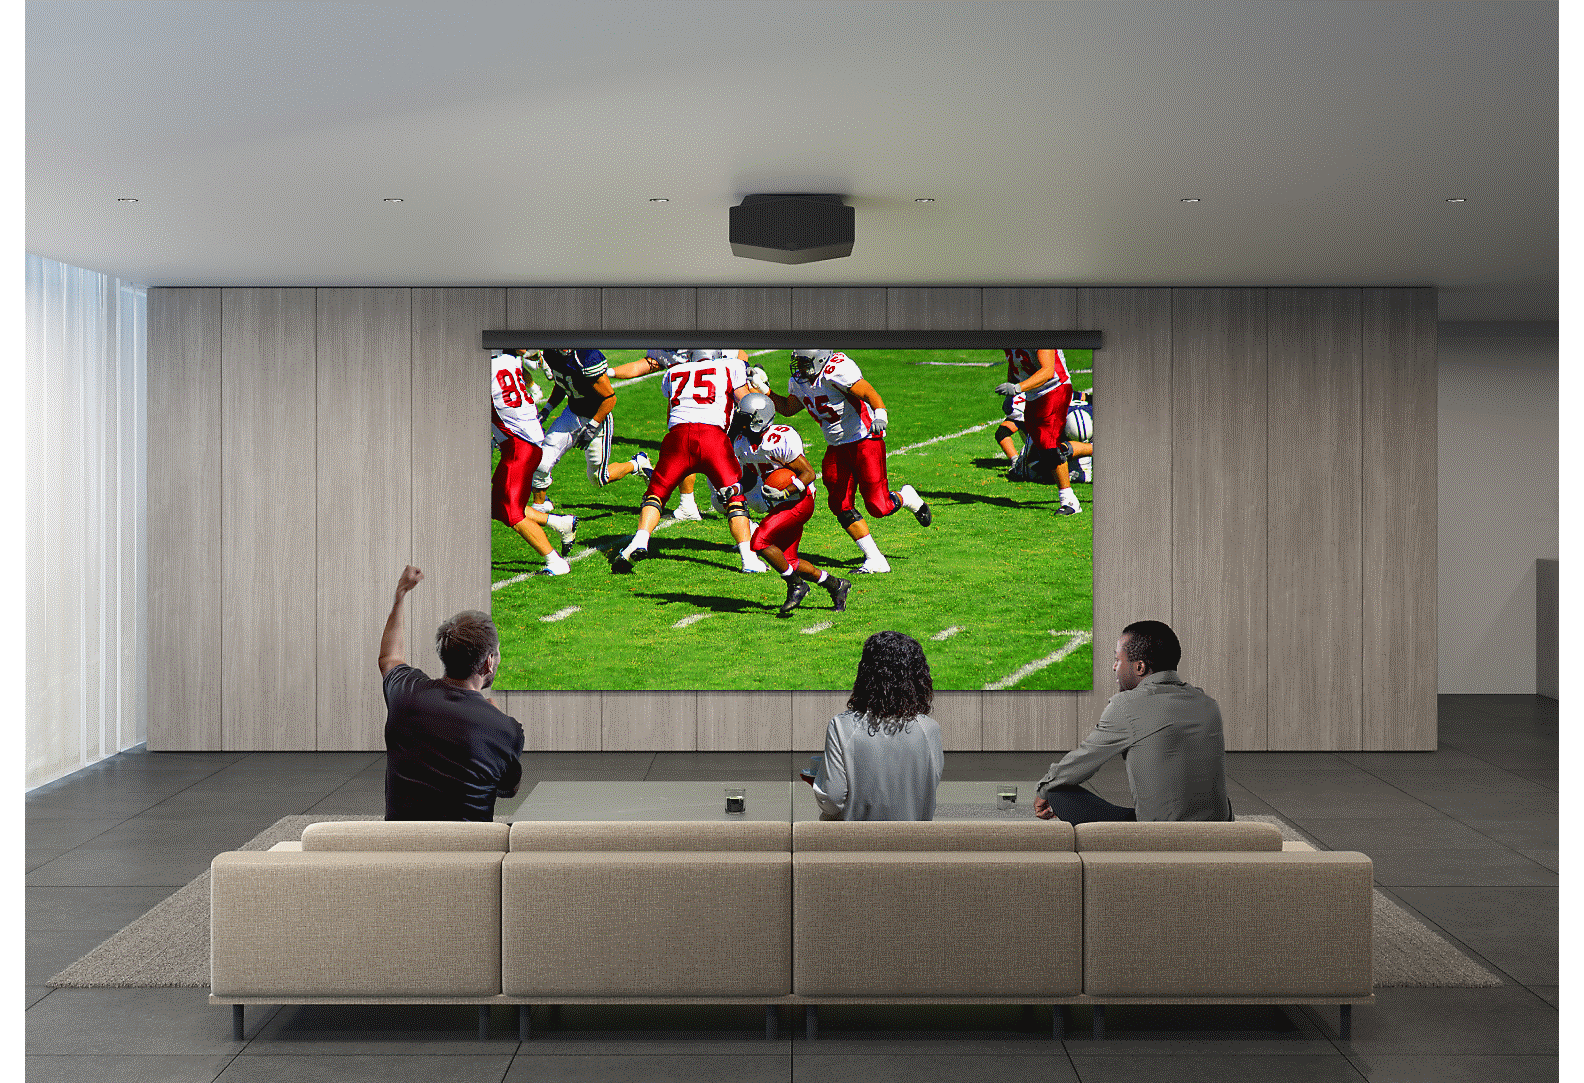 Deux hommes et une femme regardent une partie de football à l’aide d’un projecteur et d’un grand écran installé au mur.